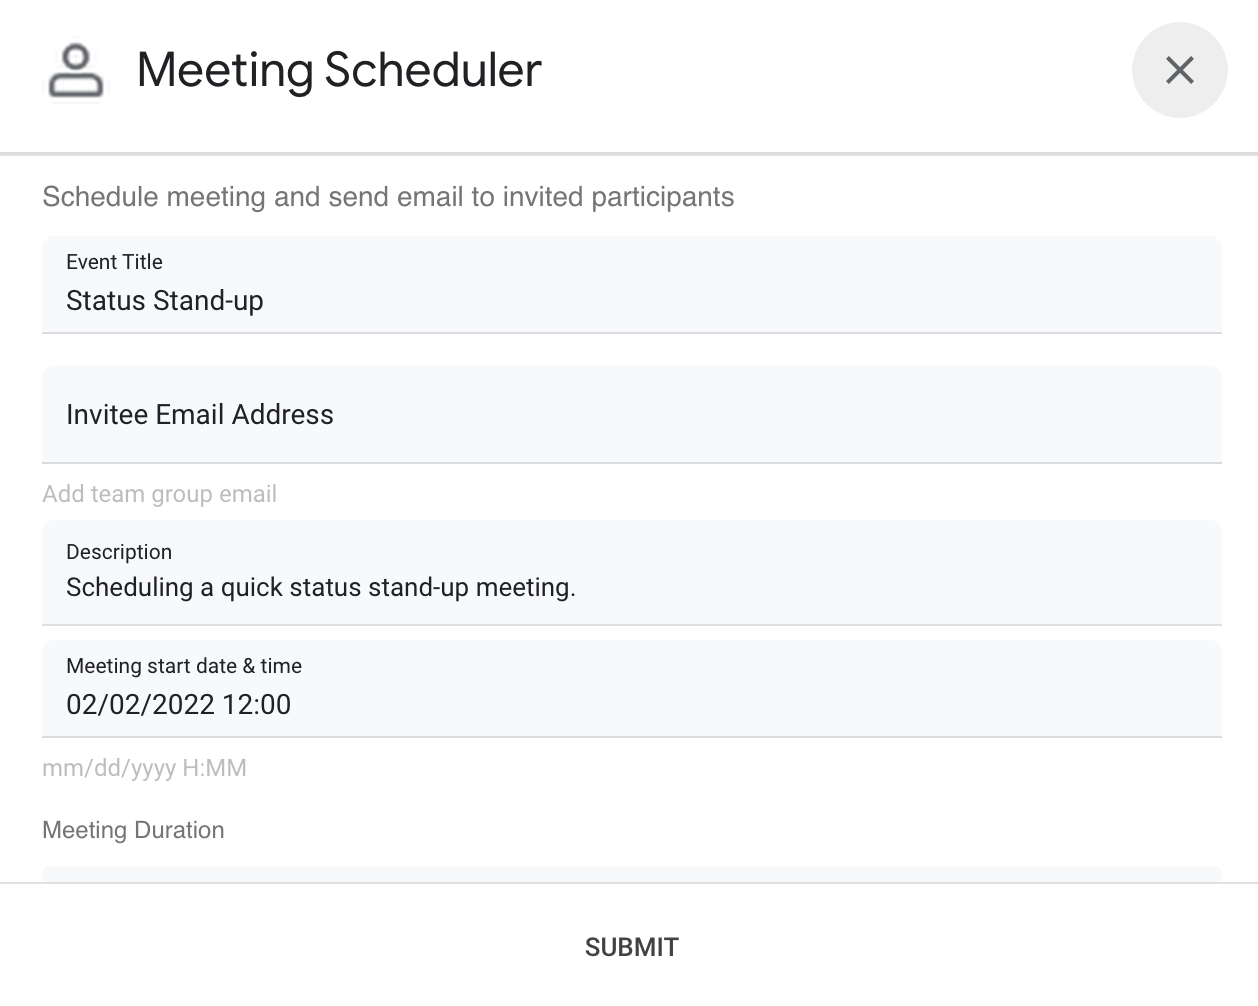 मीटिंग शेड्यूलर के चैट ऐप्लिकेशन का डायलॉग इंटरफ़ेस